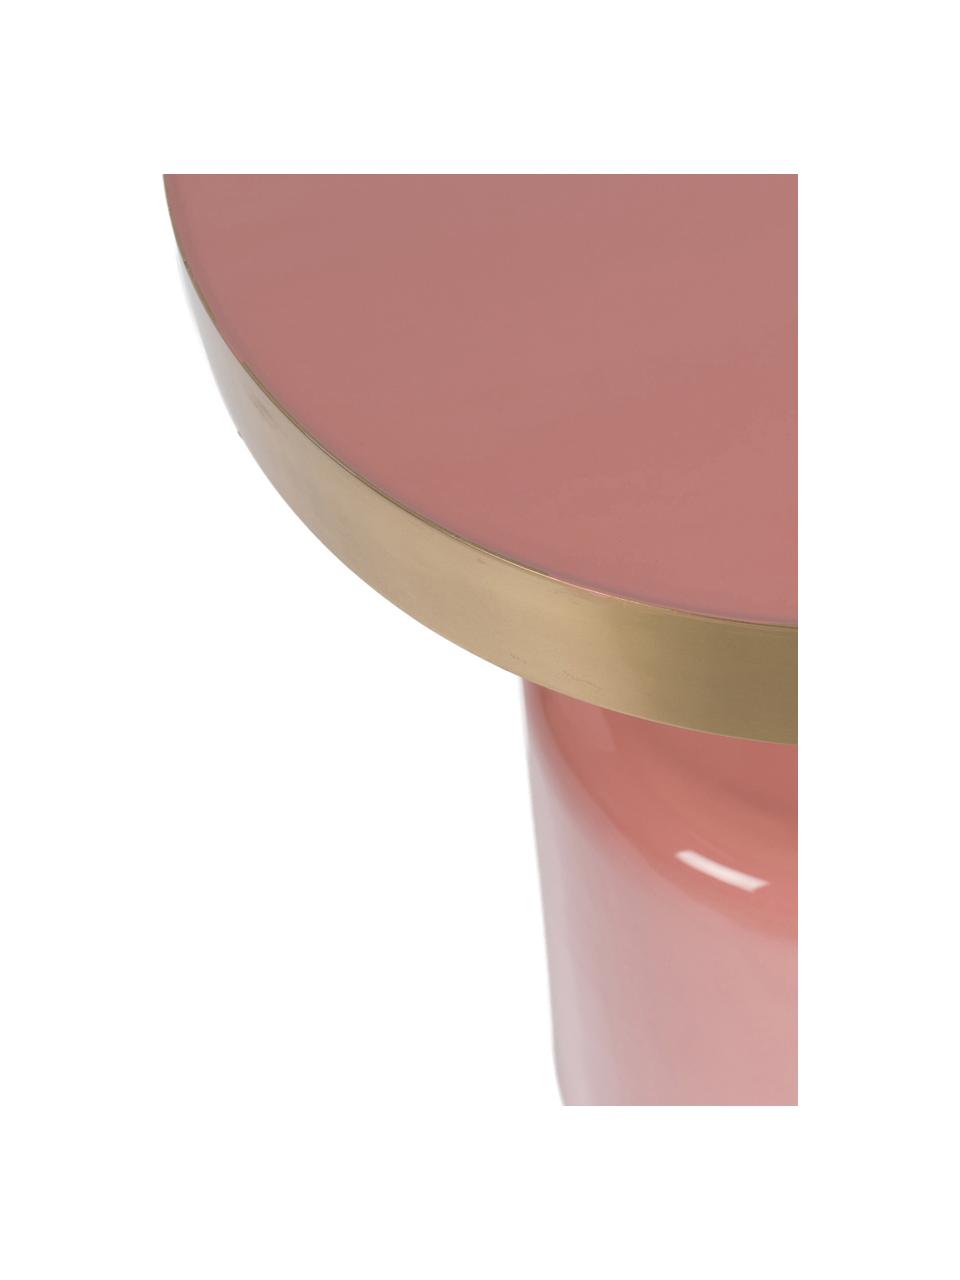 Geglazuurde bijzettafel Glam in roze, Tafelblad: geëmailleerd metaal, Frame: gepoedercoat metaal, Roze, Ø 36 x H 51 cm